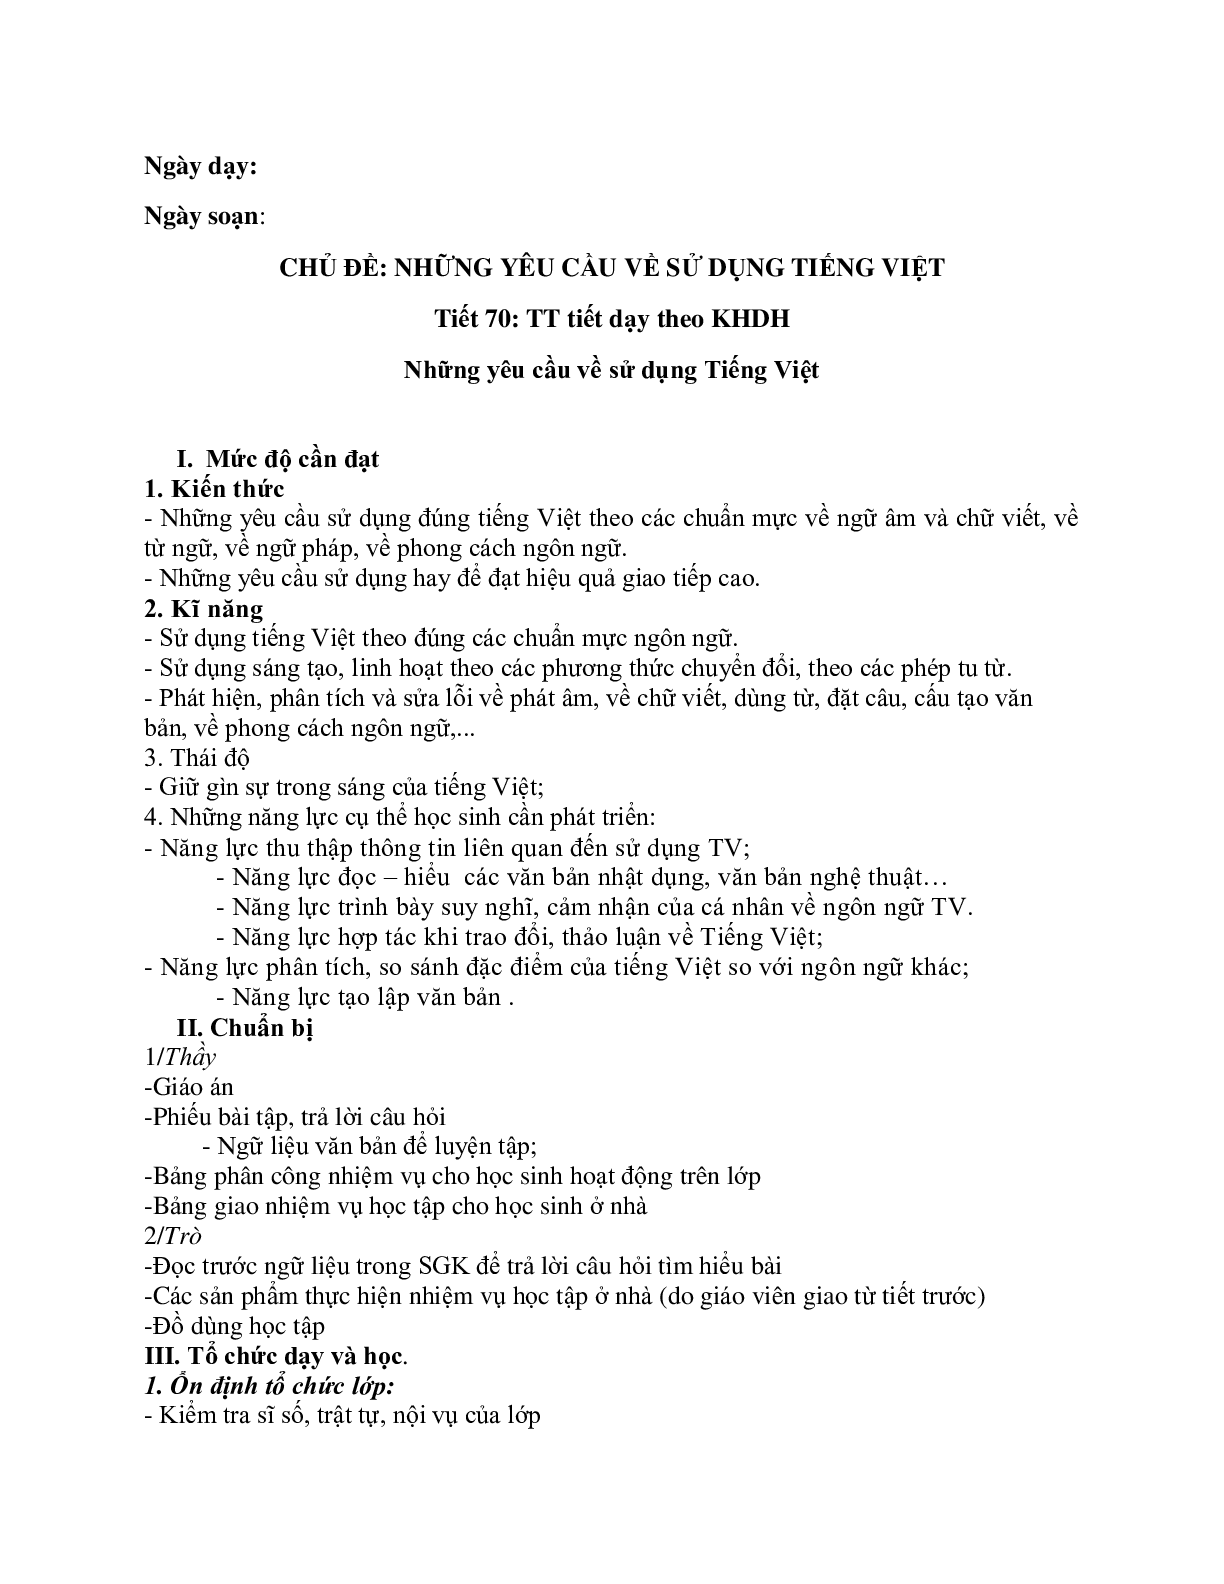 Giáo án ngữ văn lớp 10 Tiết 70: Những yêu cầu về sử dụng tiếng việt (trang 1)